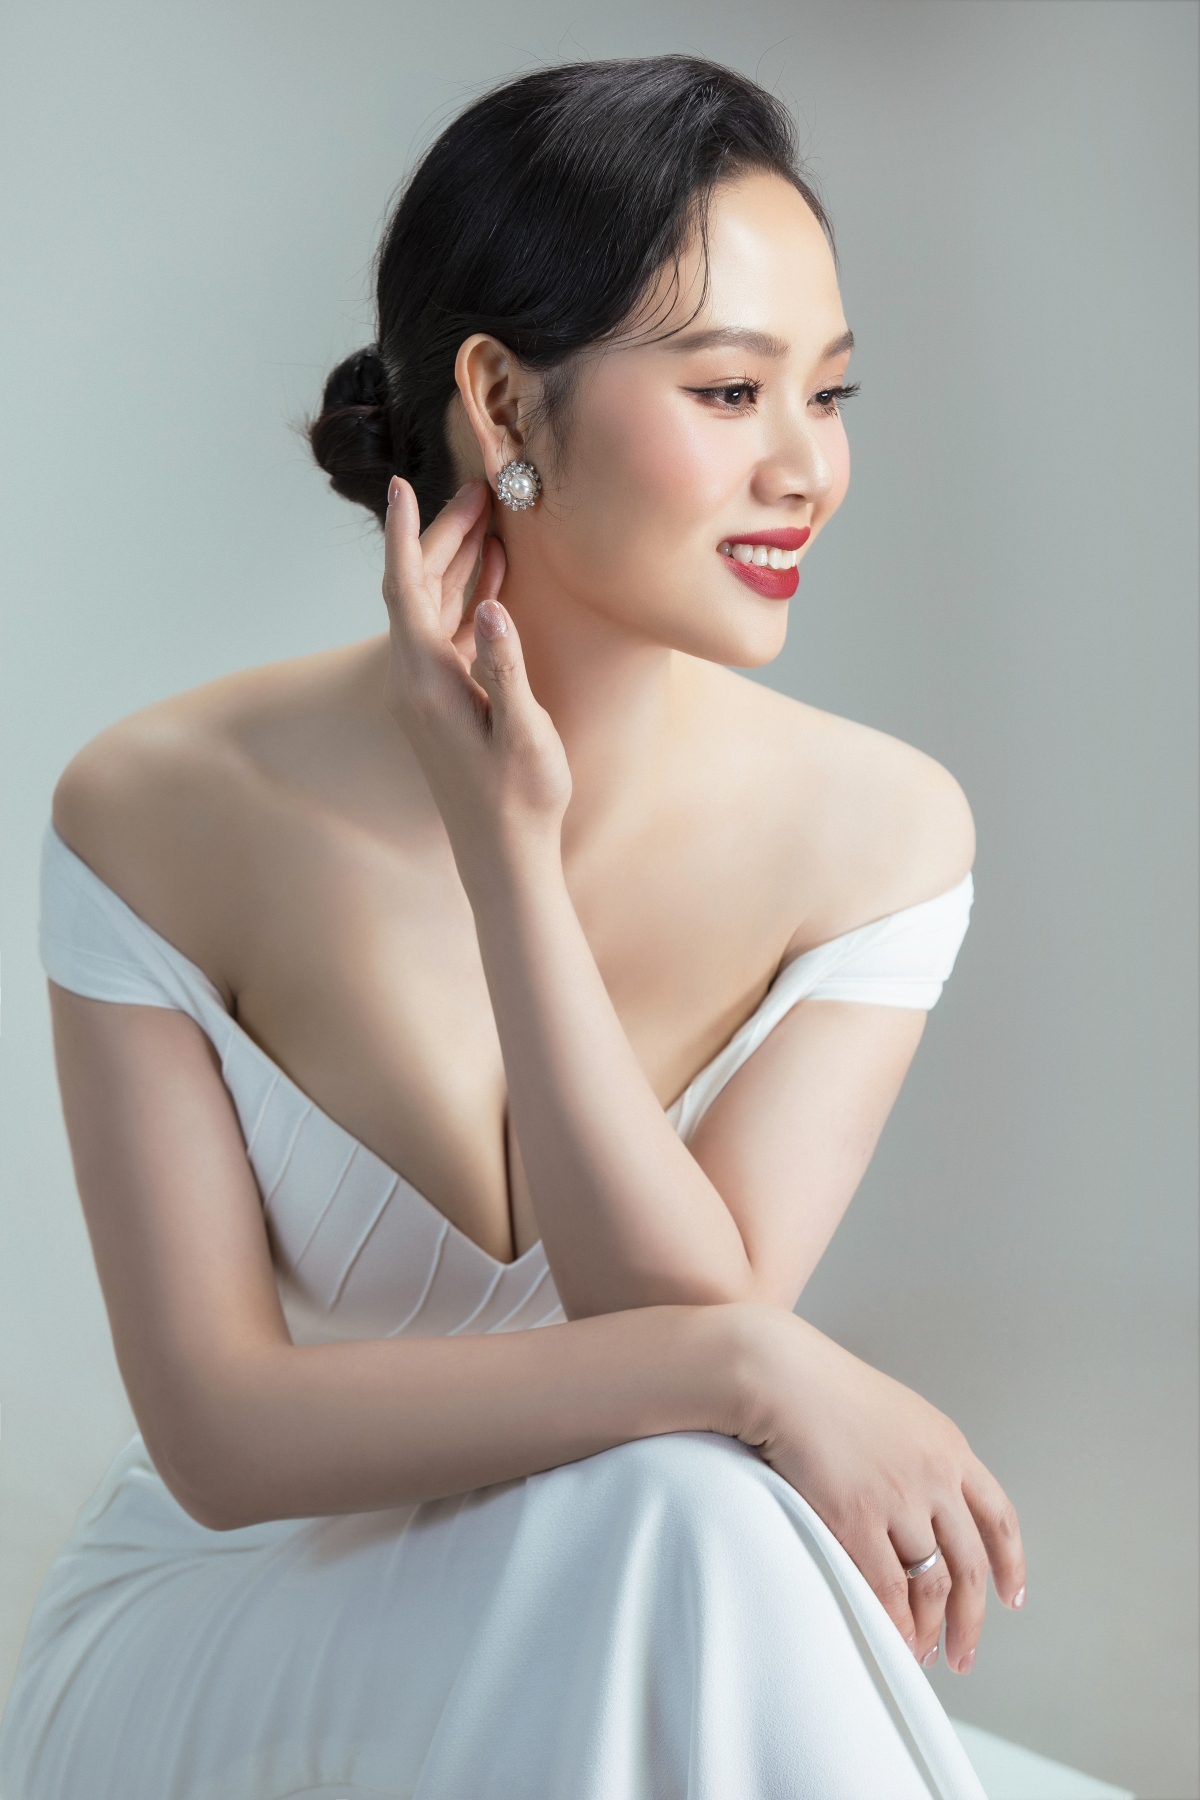 Hoa hậu Mai Phương đẹp kiêu sa trong bộ ảnh kỷ niệm 20 năm đăng quang - Ảnh 1.